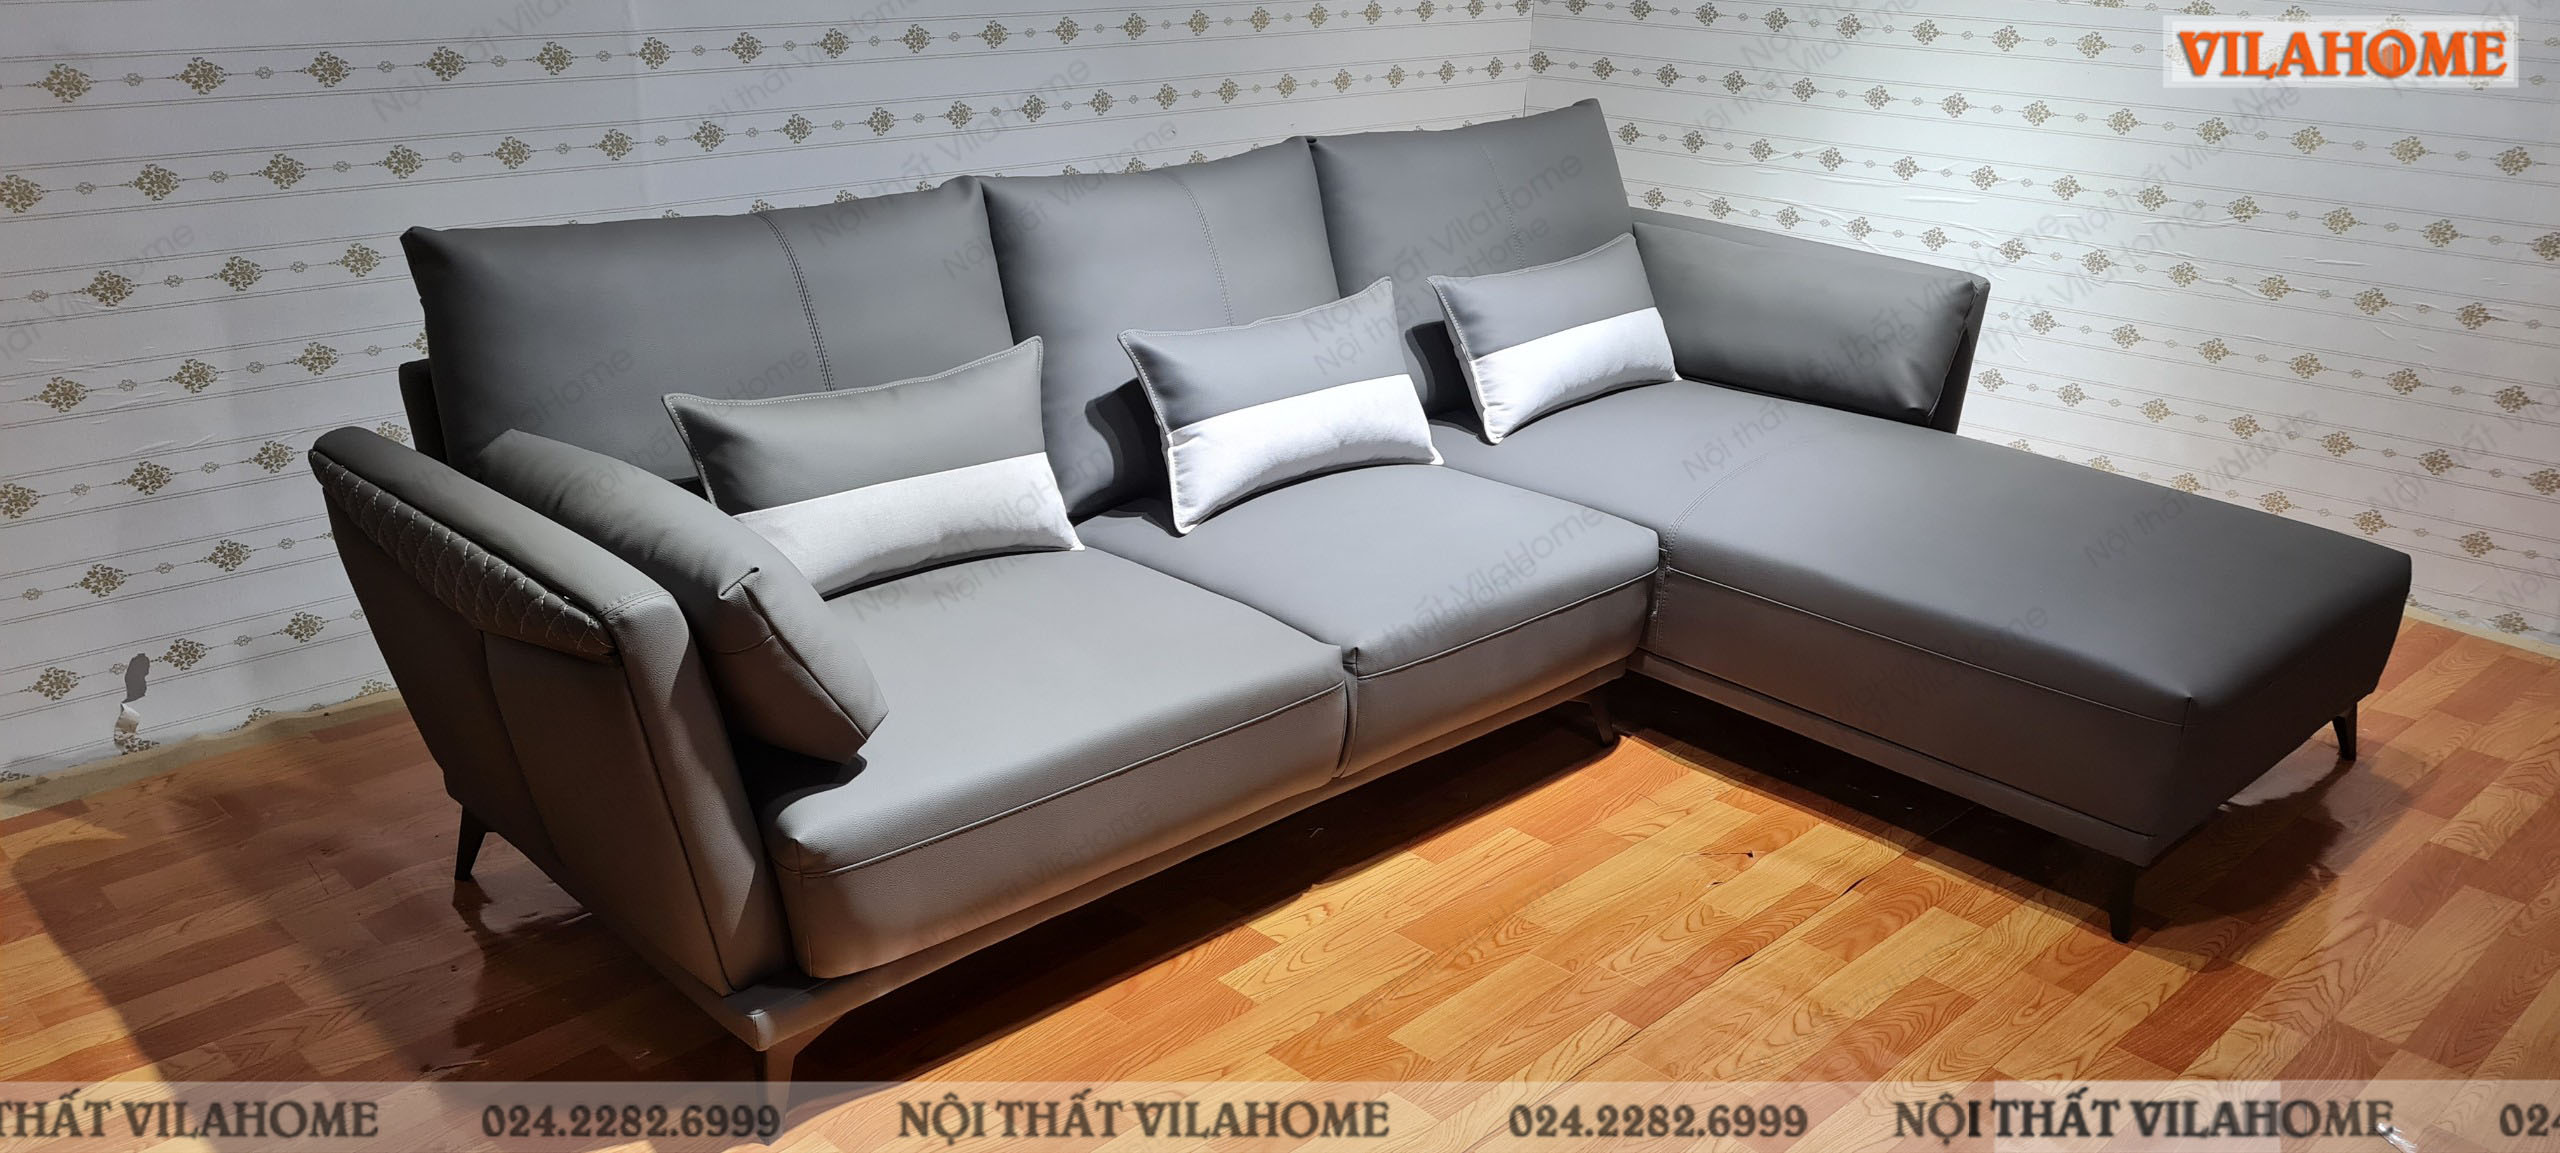 Sofa da phòng khách màu xám VilaHome cho khách hàng sofa Đống Đa ở phường Kim Liên bàn giao.